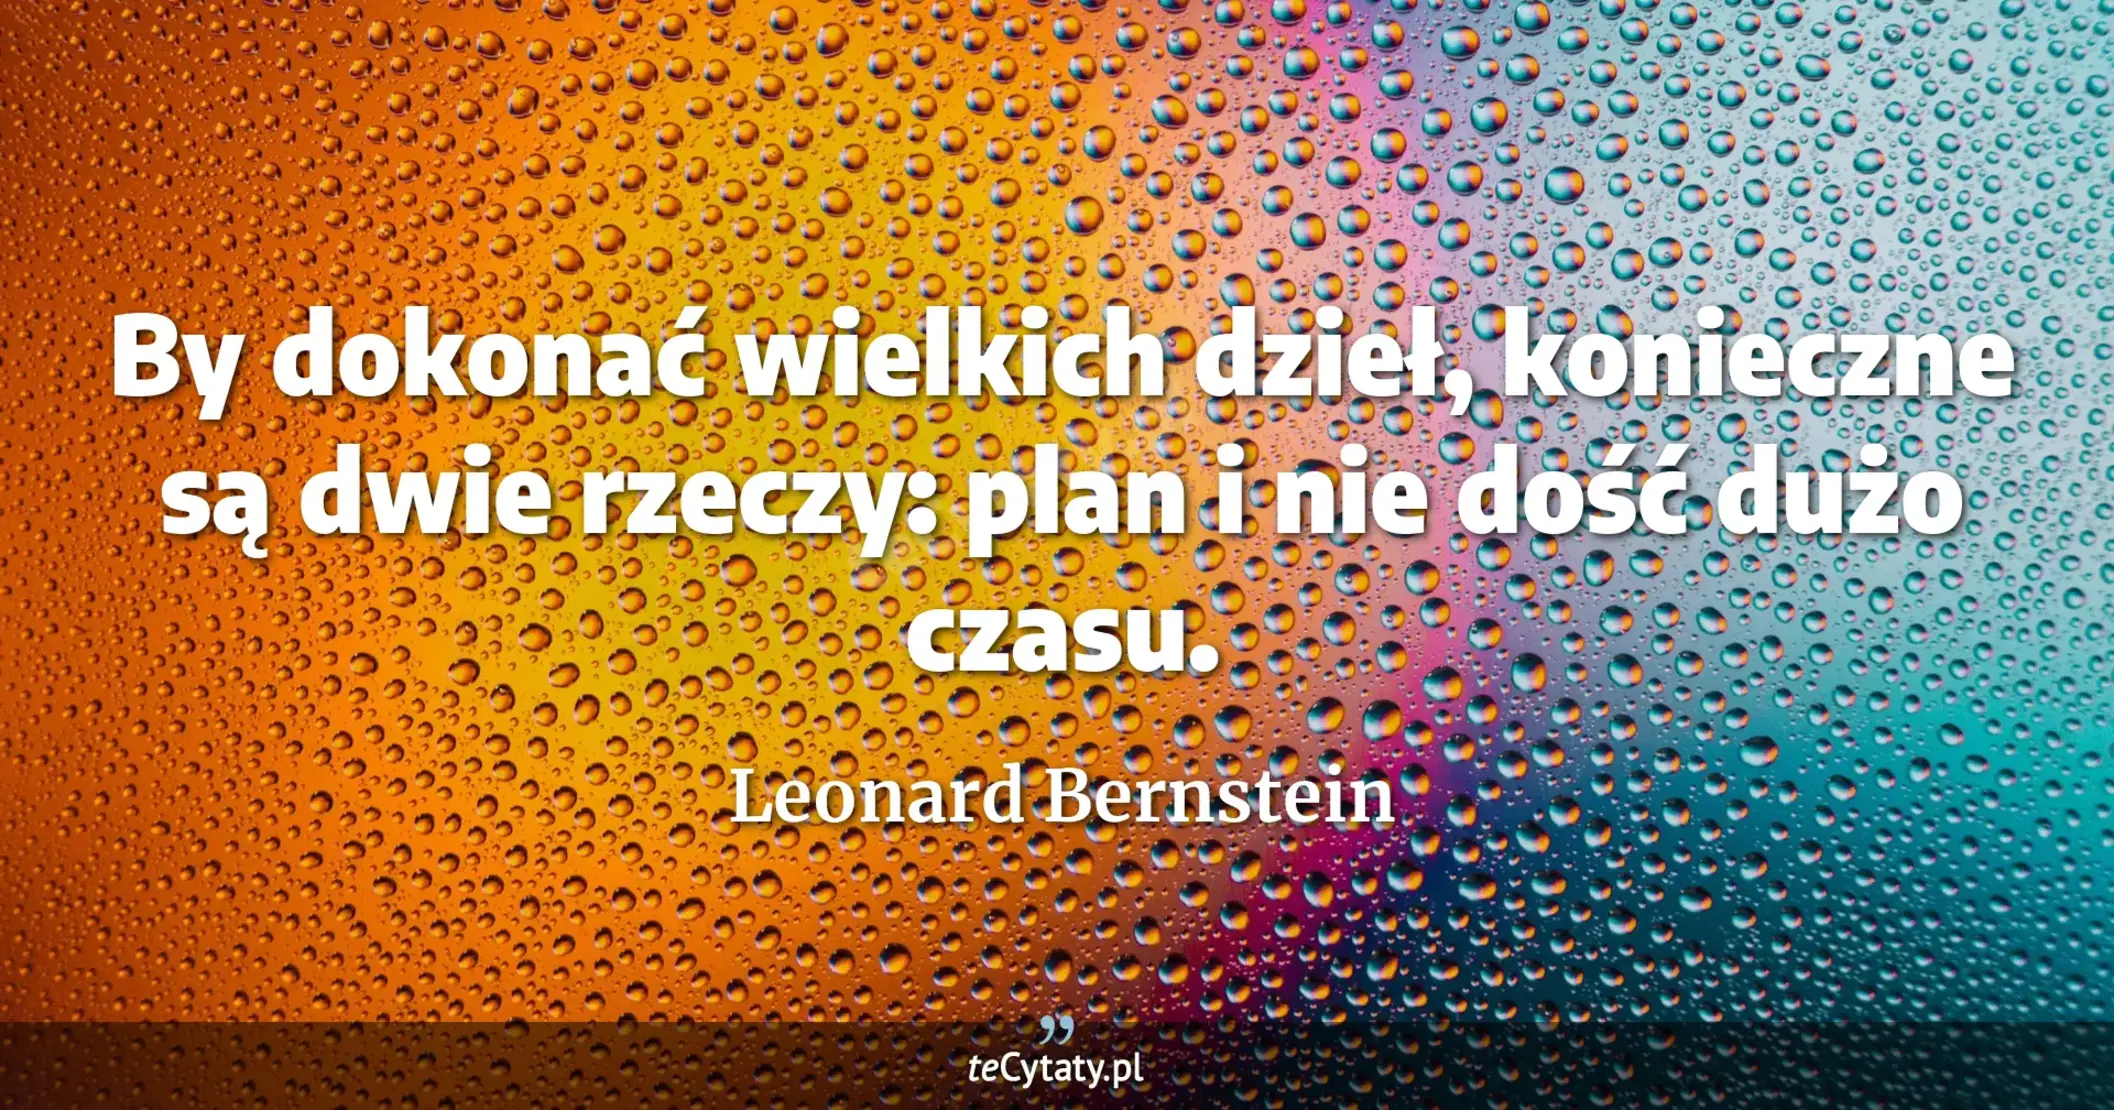 By dokonać wielkich dzieł, konieczne są dwie rzeczy: plan i nie dość dużo czasu. - Leonard Bernstein